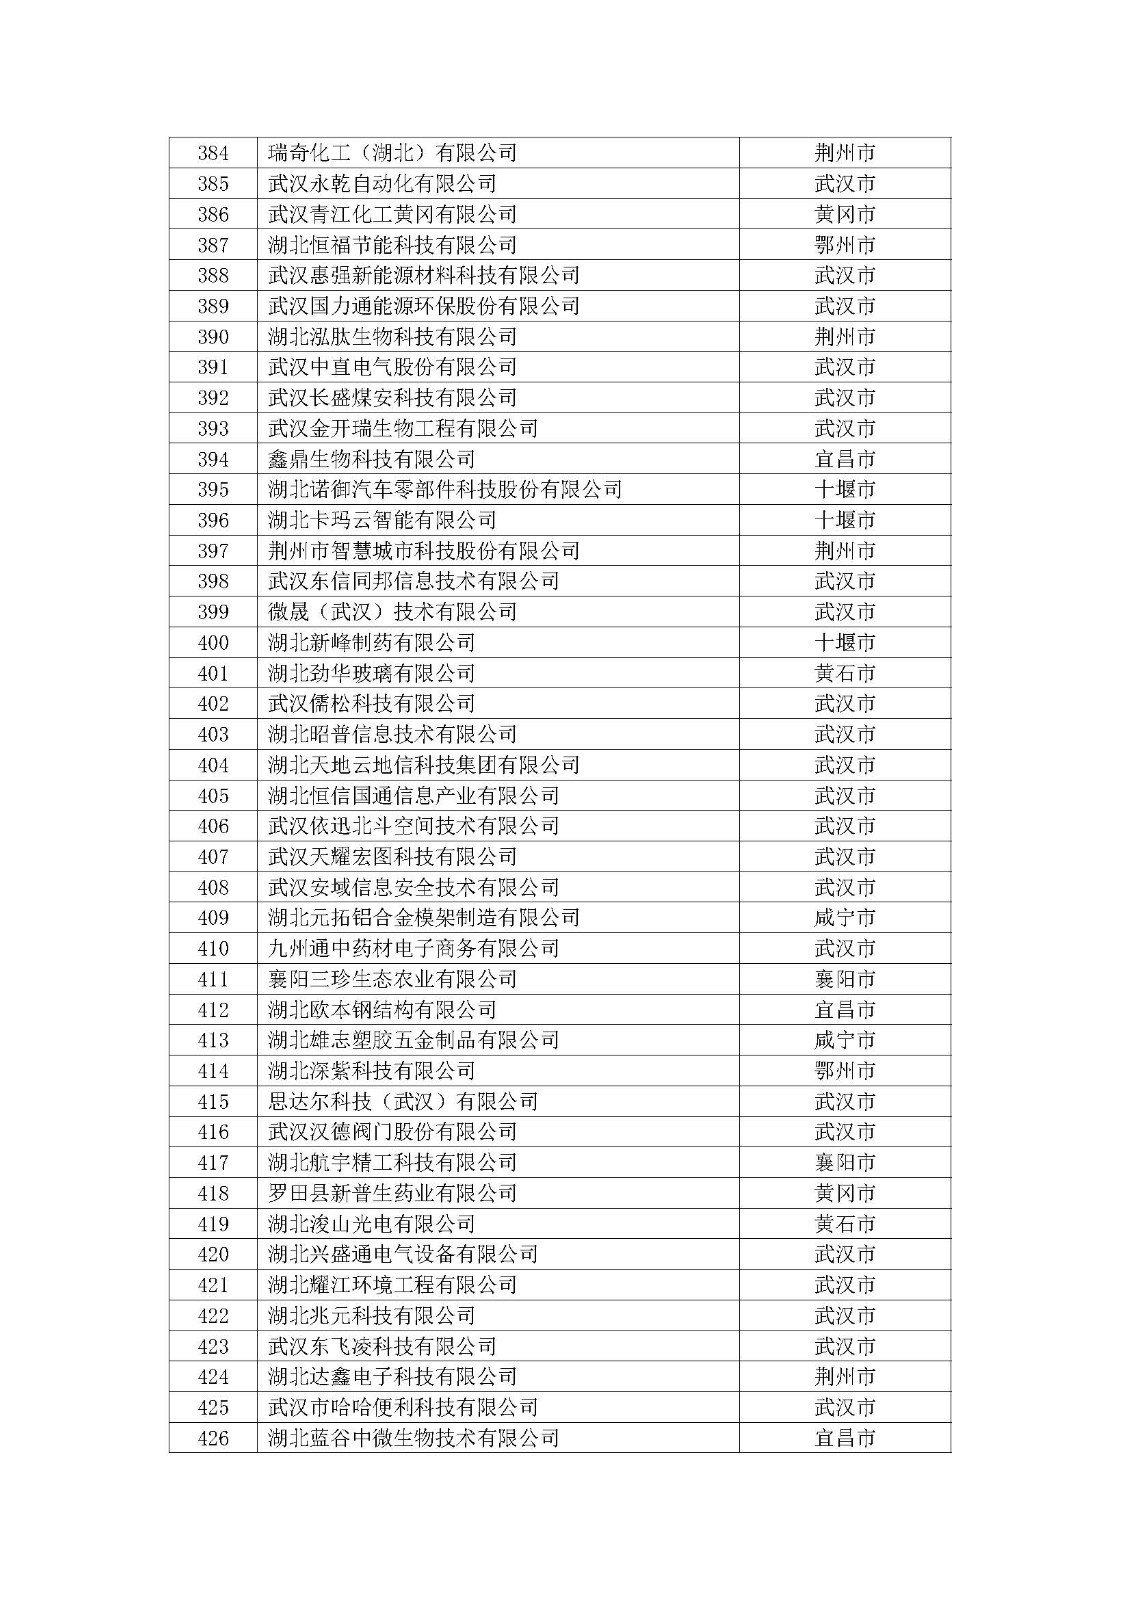 第一批拟入库湖北省科创“新物种”企业名单_页面_11.jpg